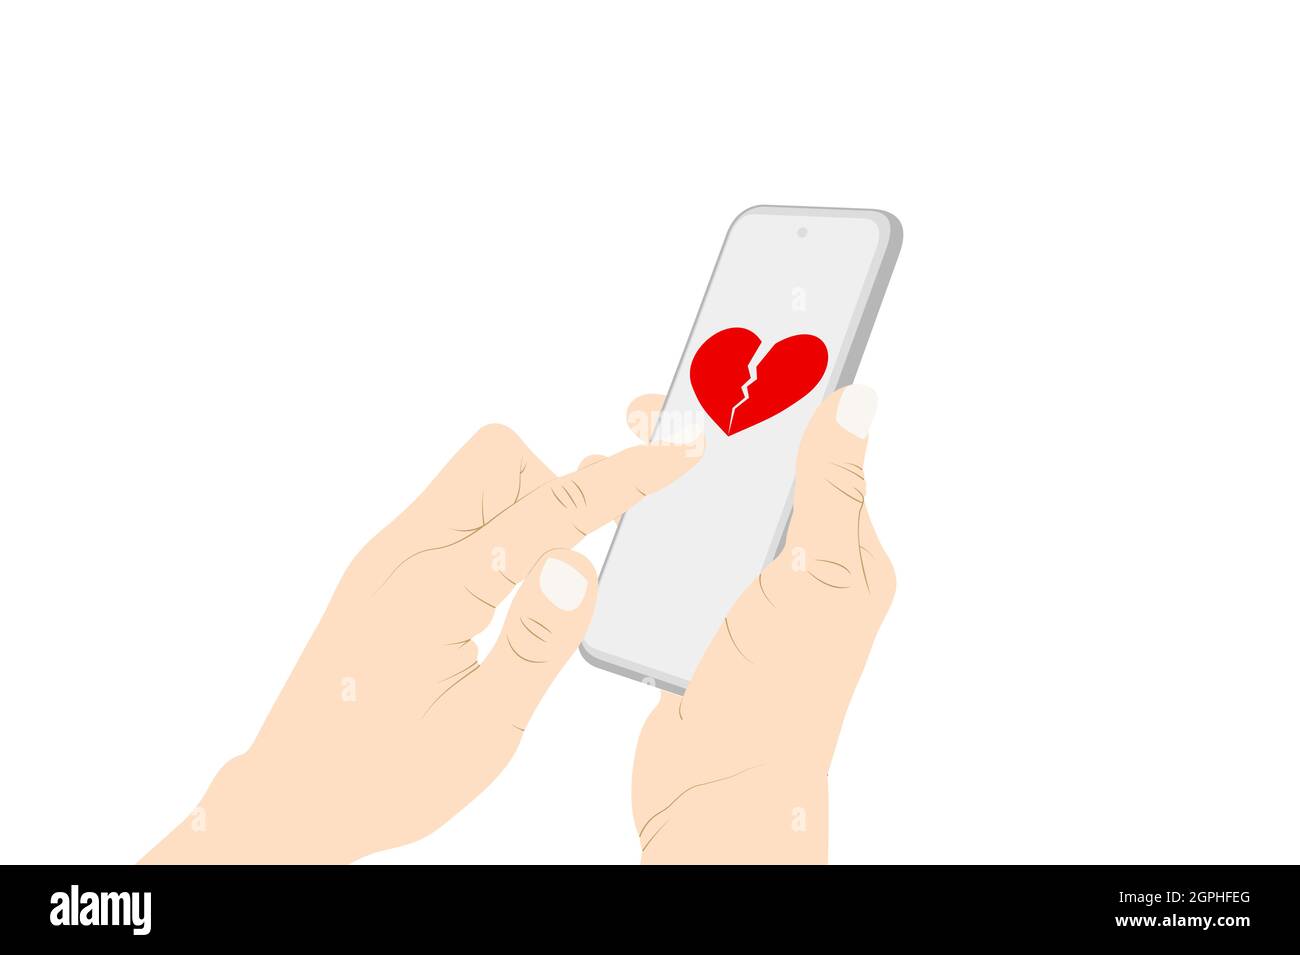 Enviando corazón roto emoji con teléfono, flirting, símbolo de corazón roto, mano mujer enviando un mensaje con teléfono. Ilustración de stock vectorial Ilustración del Vector